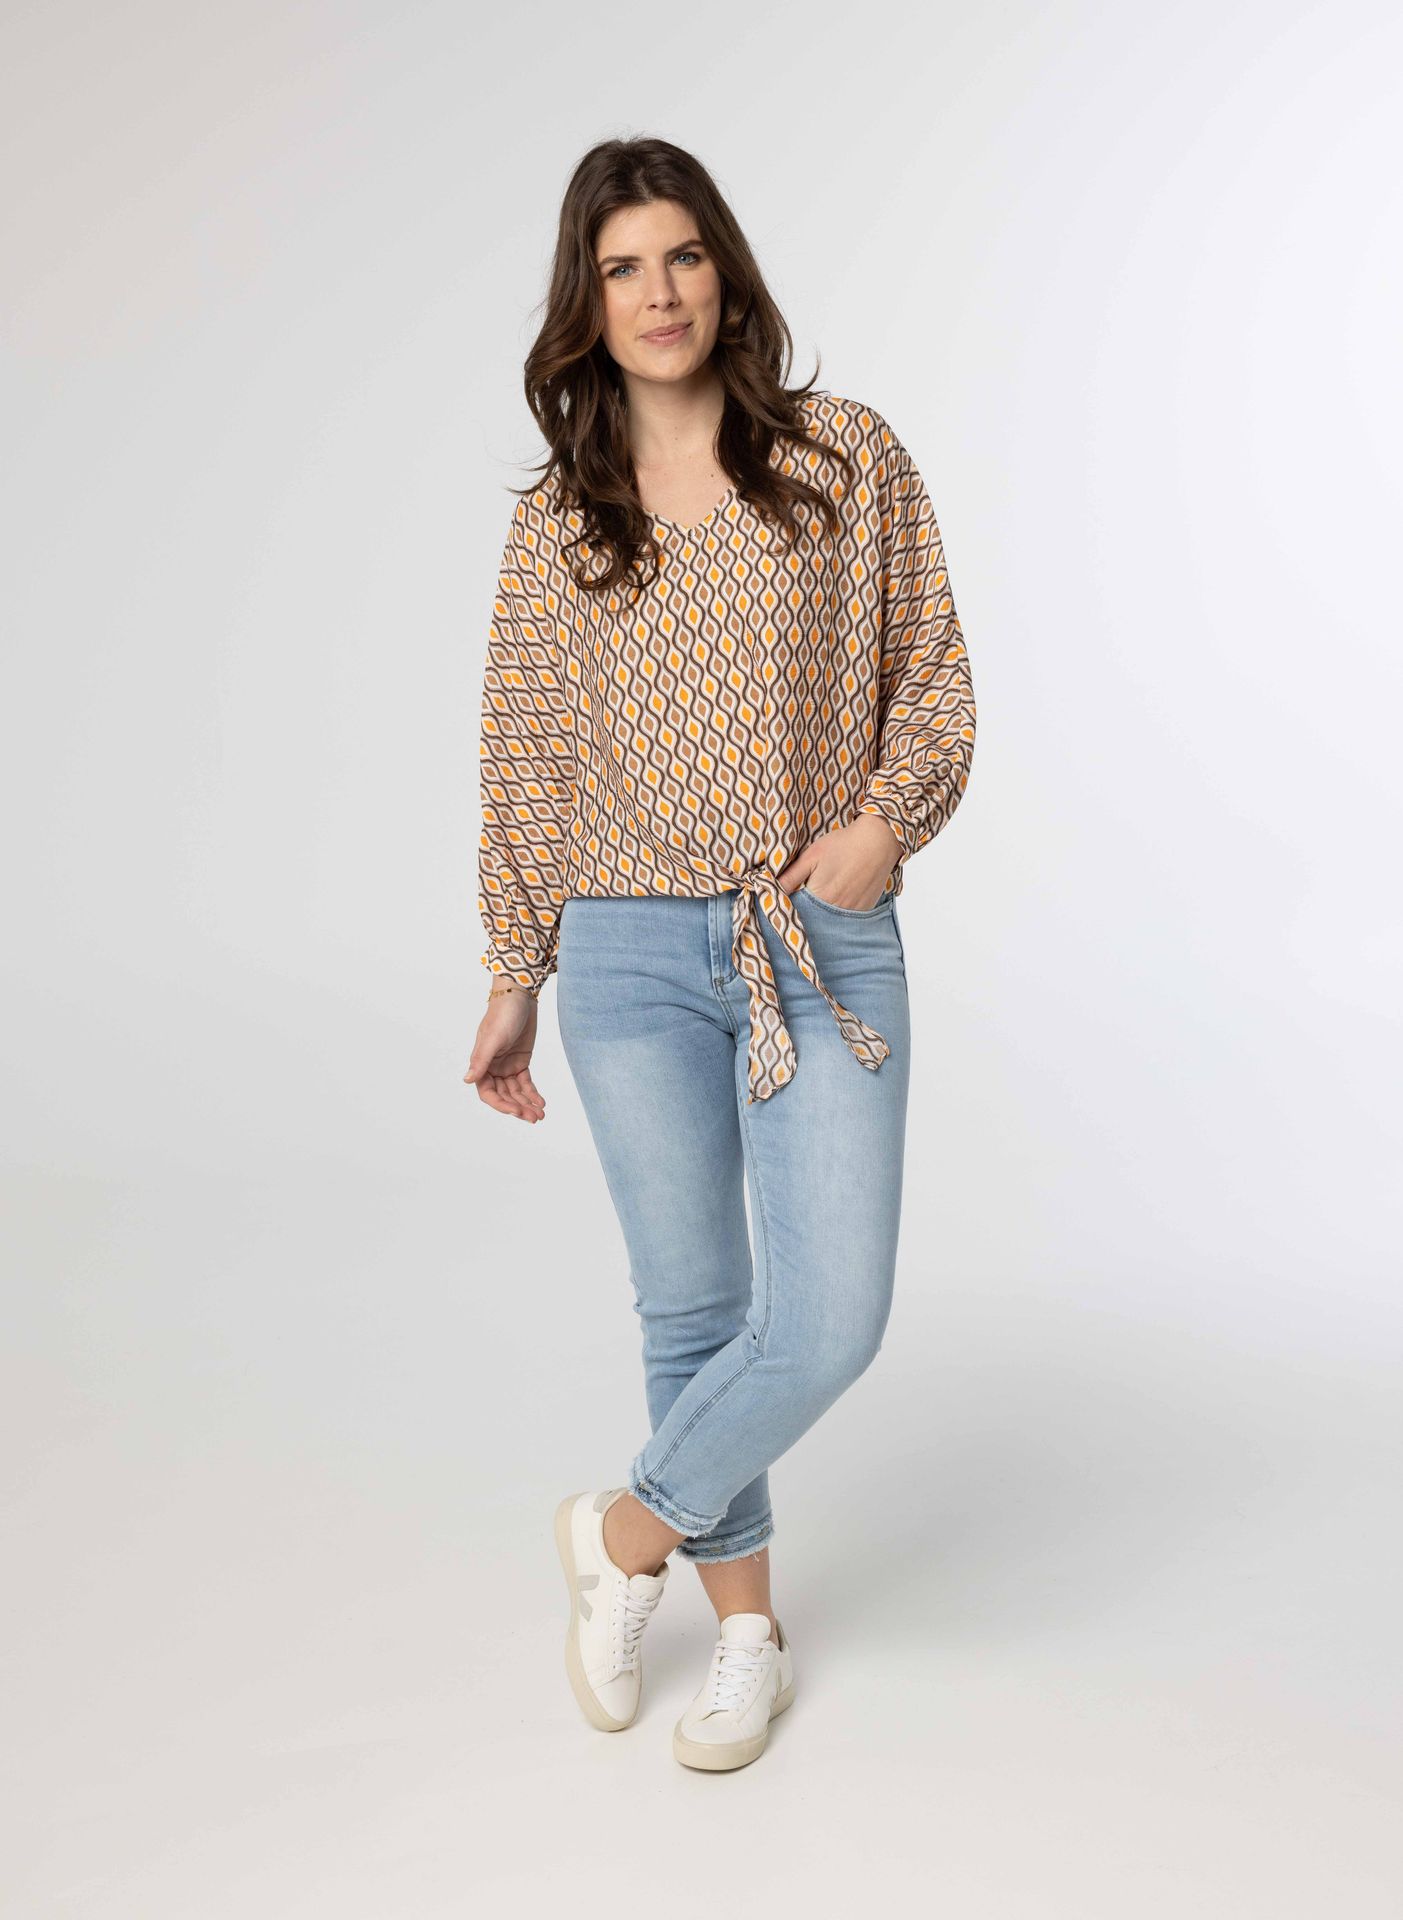 Norah Shirt met strikdetail brown/yellow 213850-233